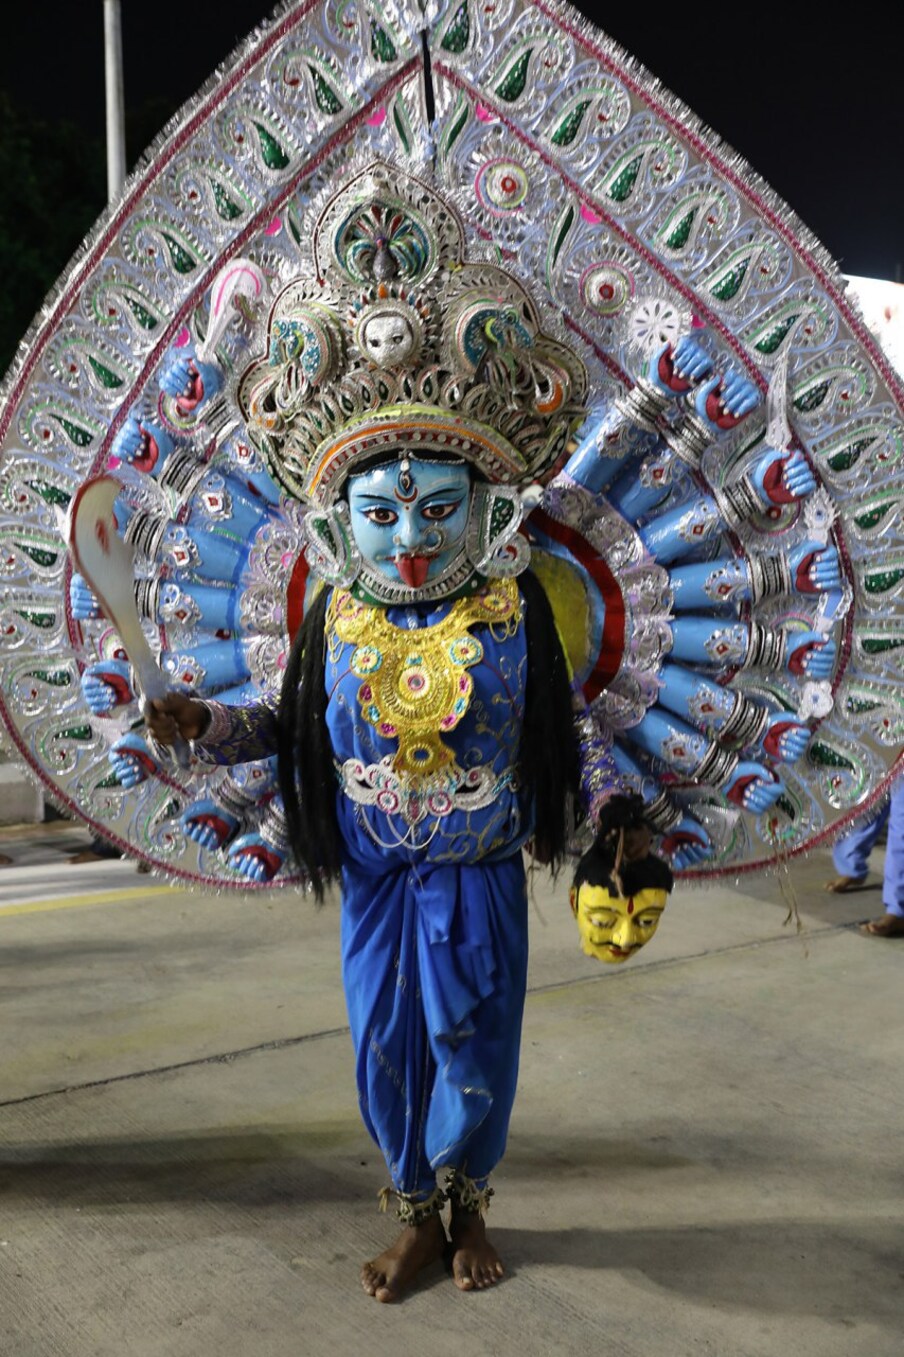  శ్రీవారి బ్రహ్మోత్సవాల్లో కళాకారుల ప్రదర్శనలు